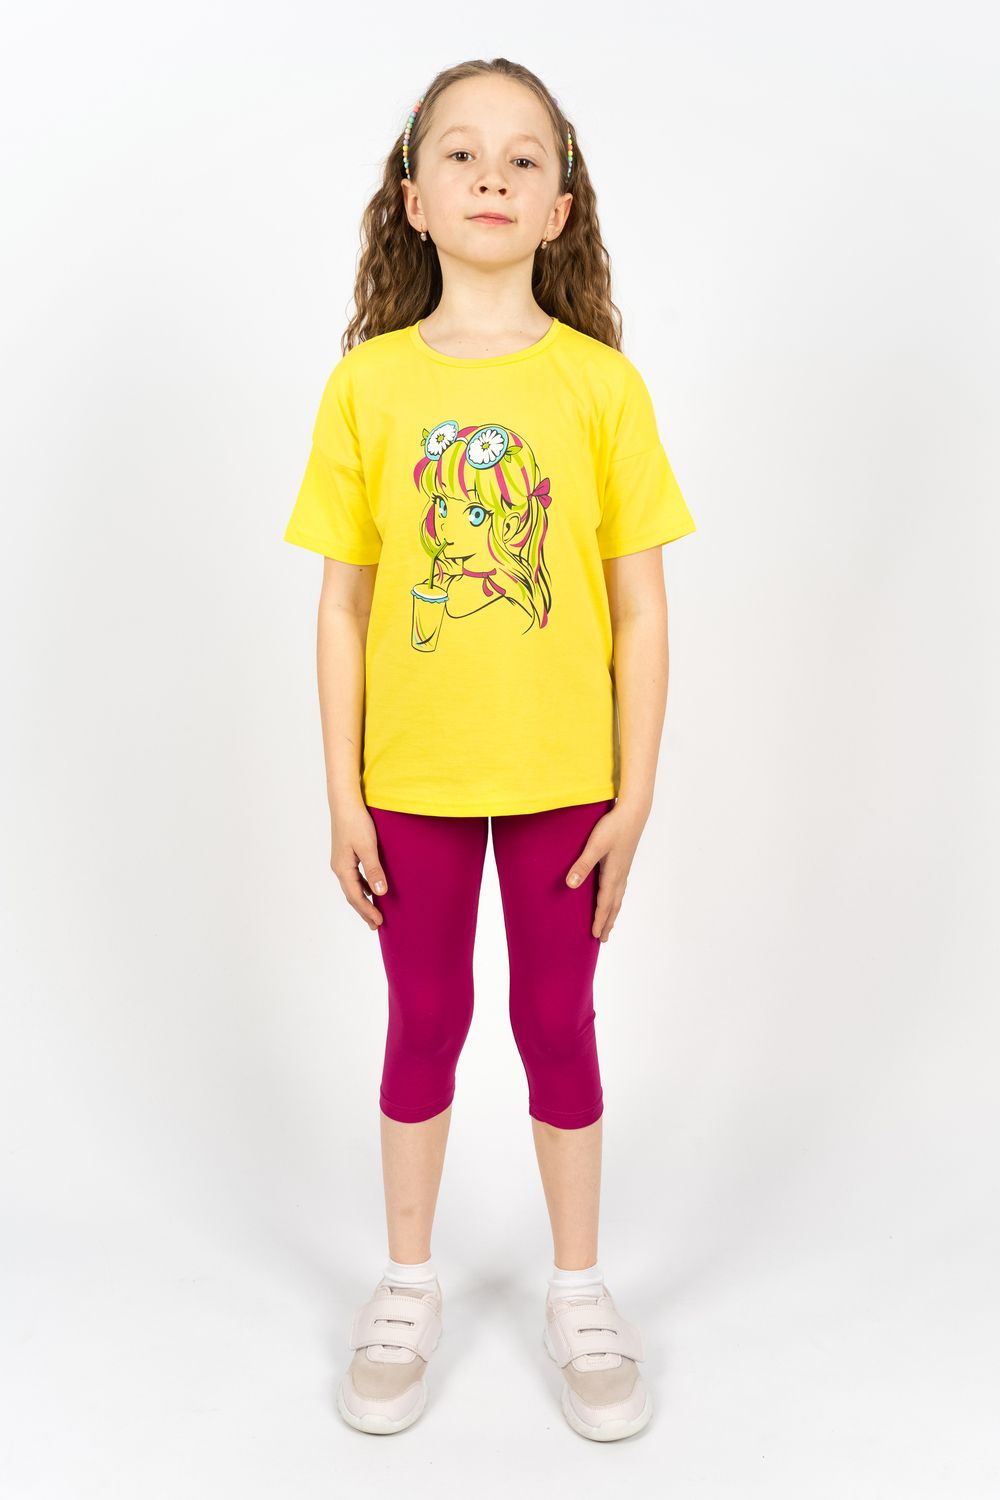 Комплект для девочки 41105 (футболка+ бриджи) - желтый/ягодный